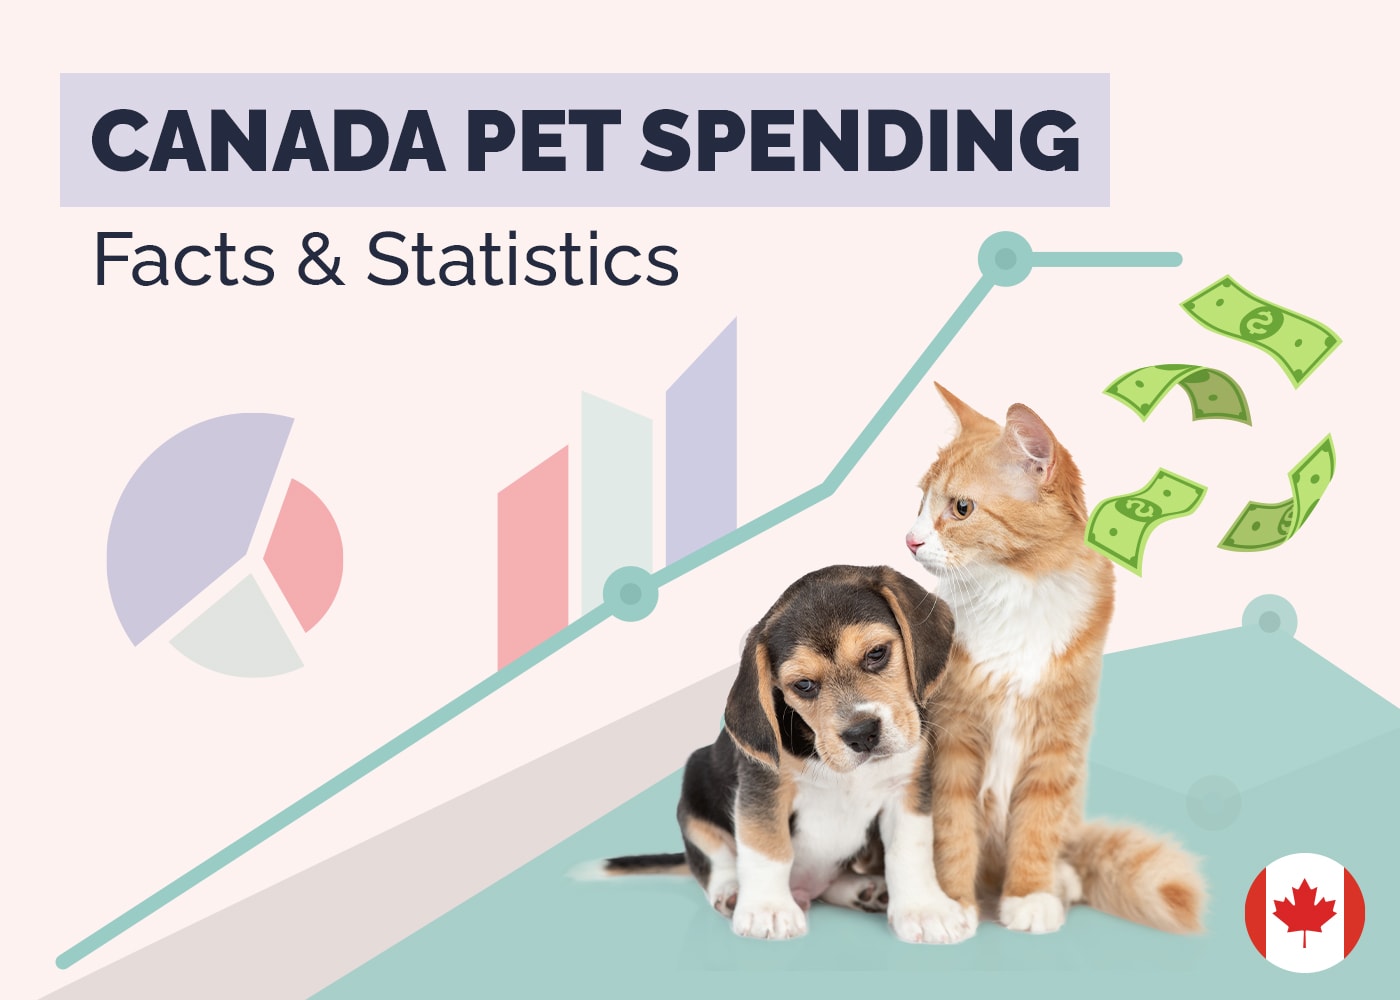 Canada Pet Spending Facts & Statistics